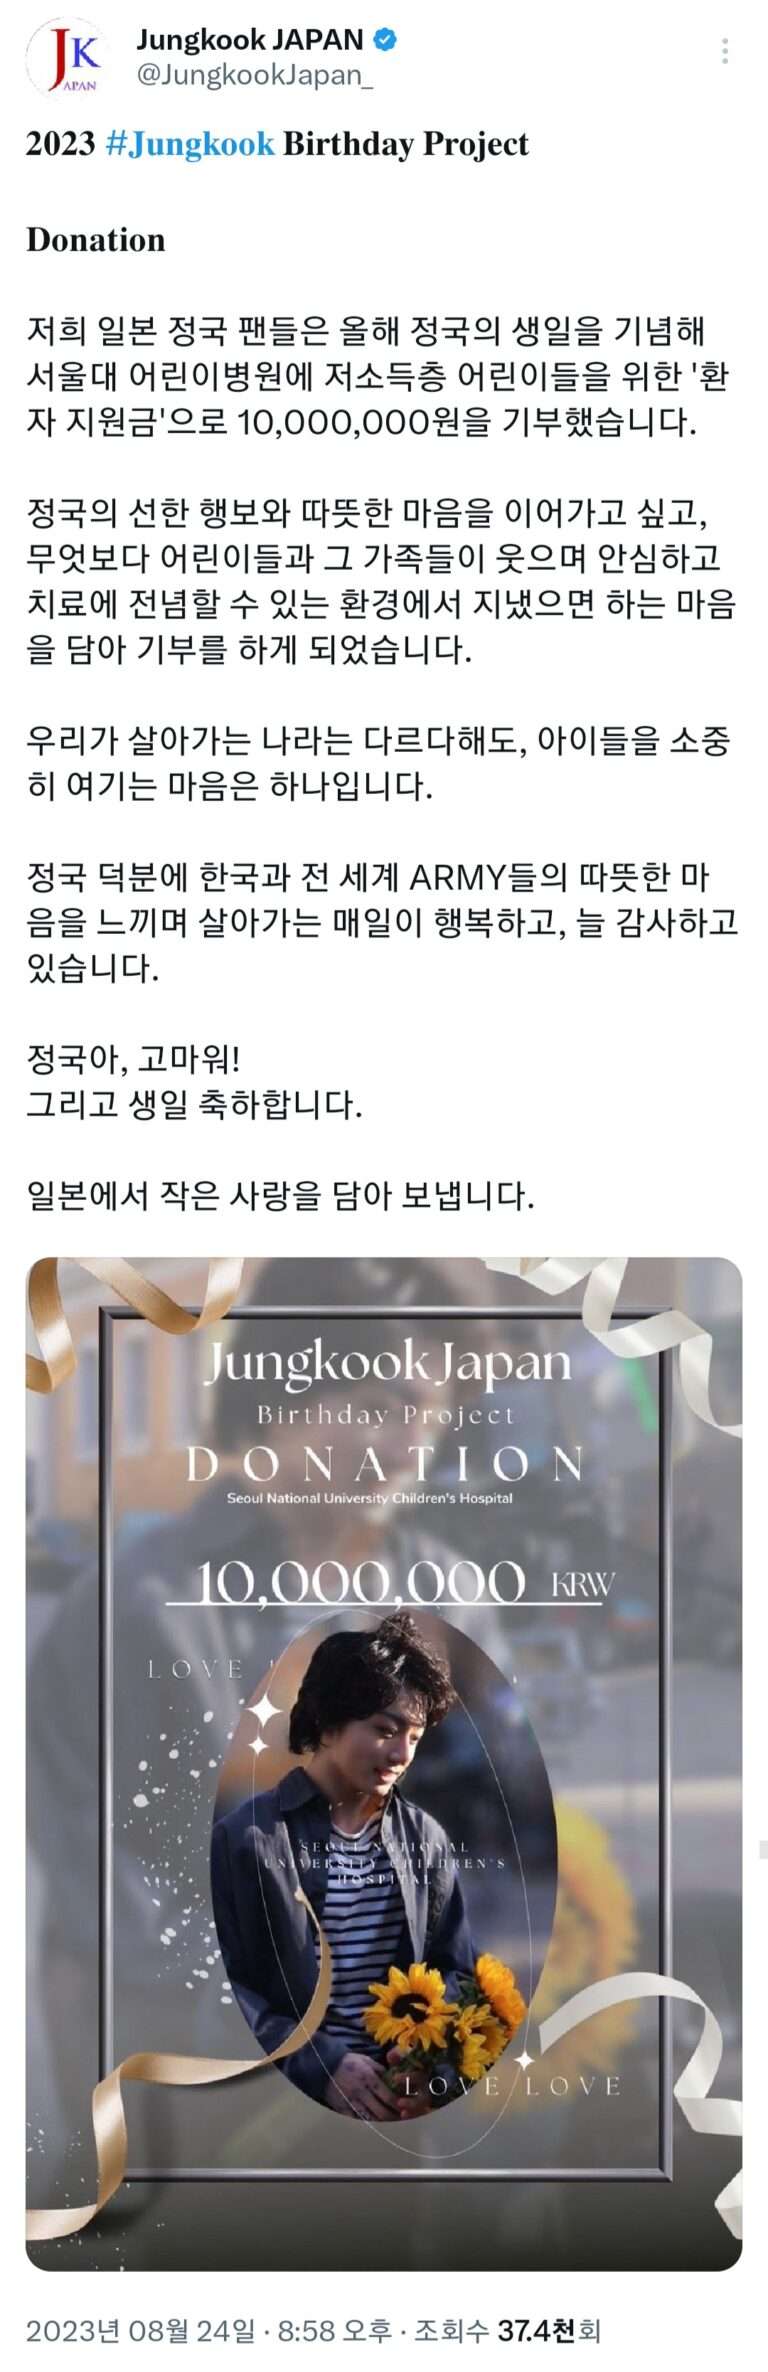 BTS Jungkook's Japanese fans donate 10 million won to Seoul National University Children's Hospital